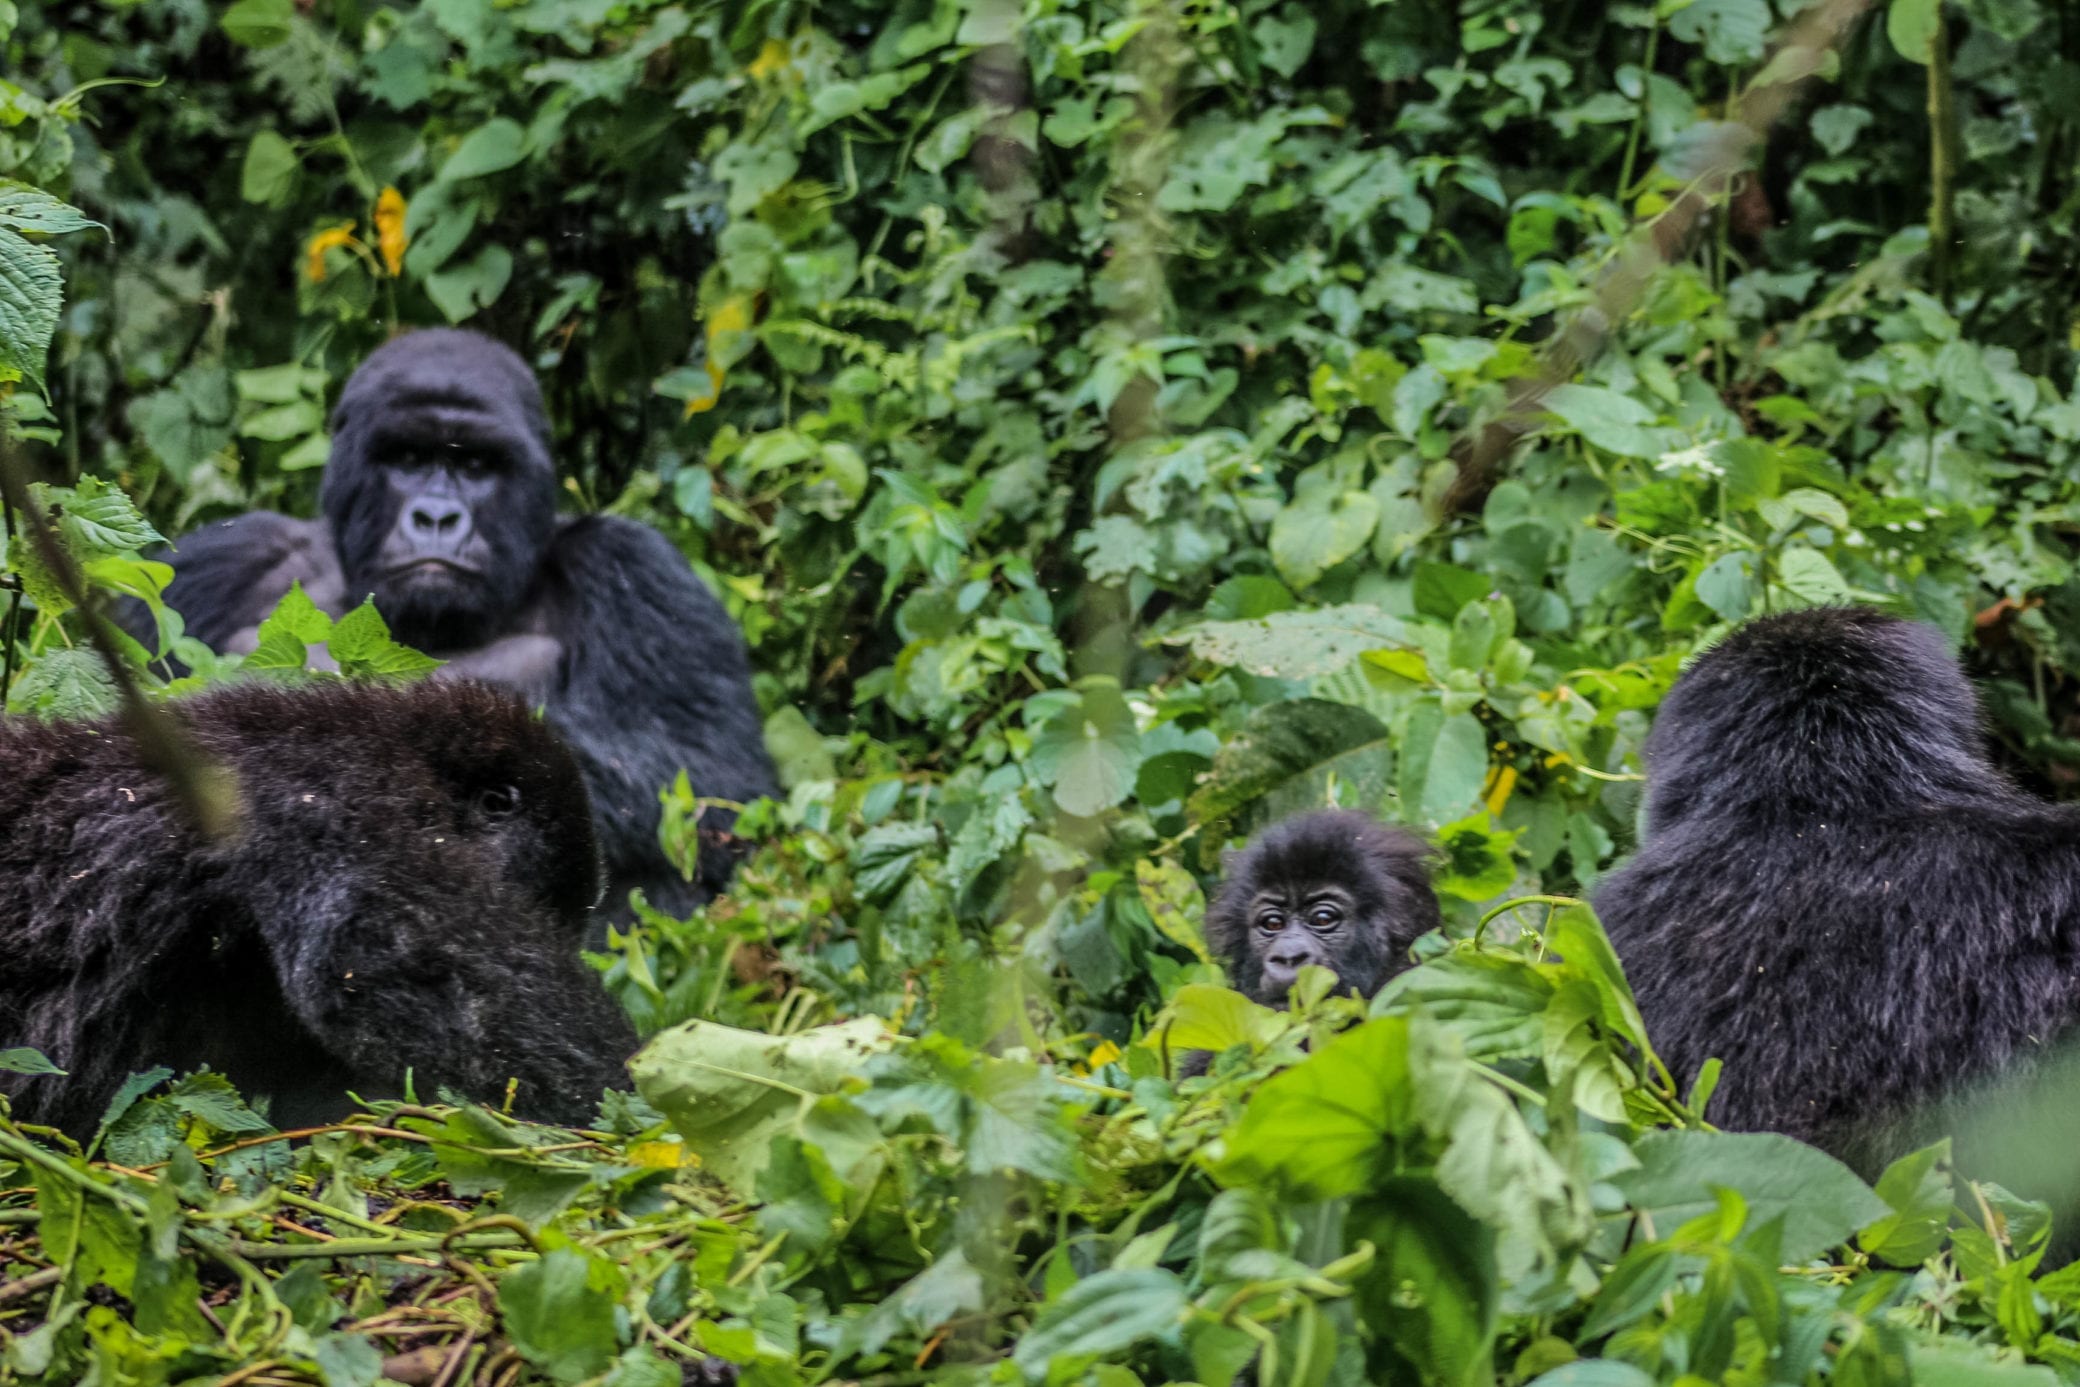 Post Covid-19 travel in the Virunga national park